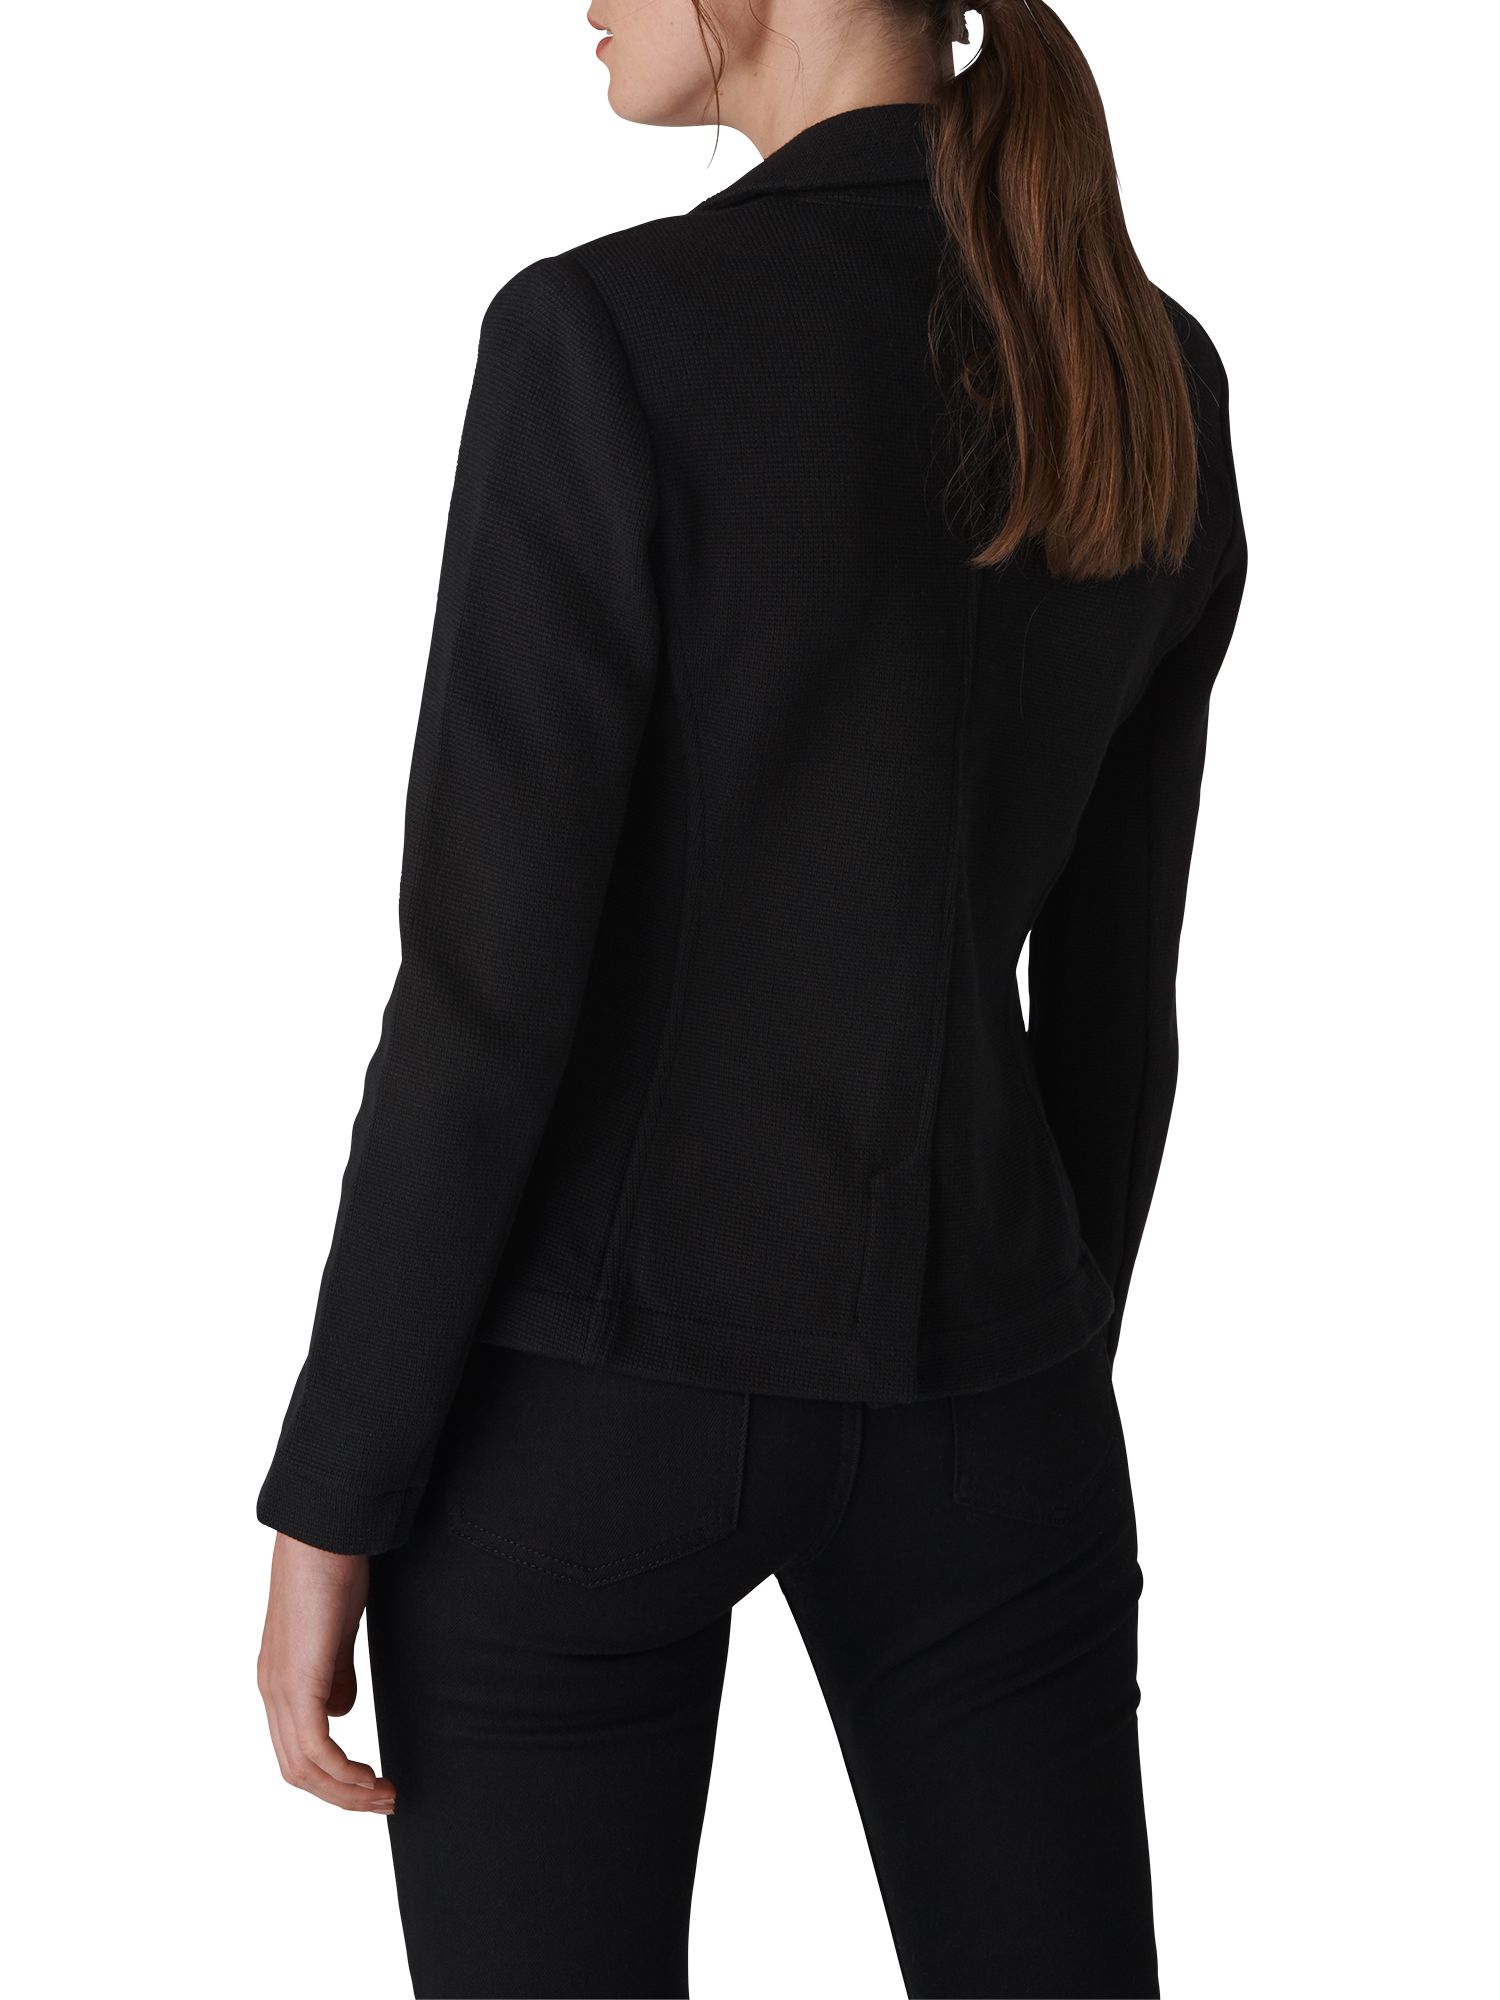 Whistles Slim Jersey Jacket, Black at John Lewis & Partners